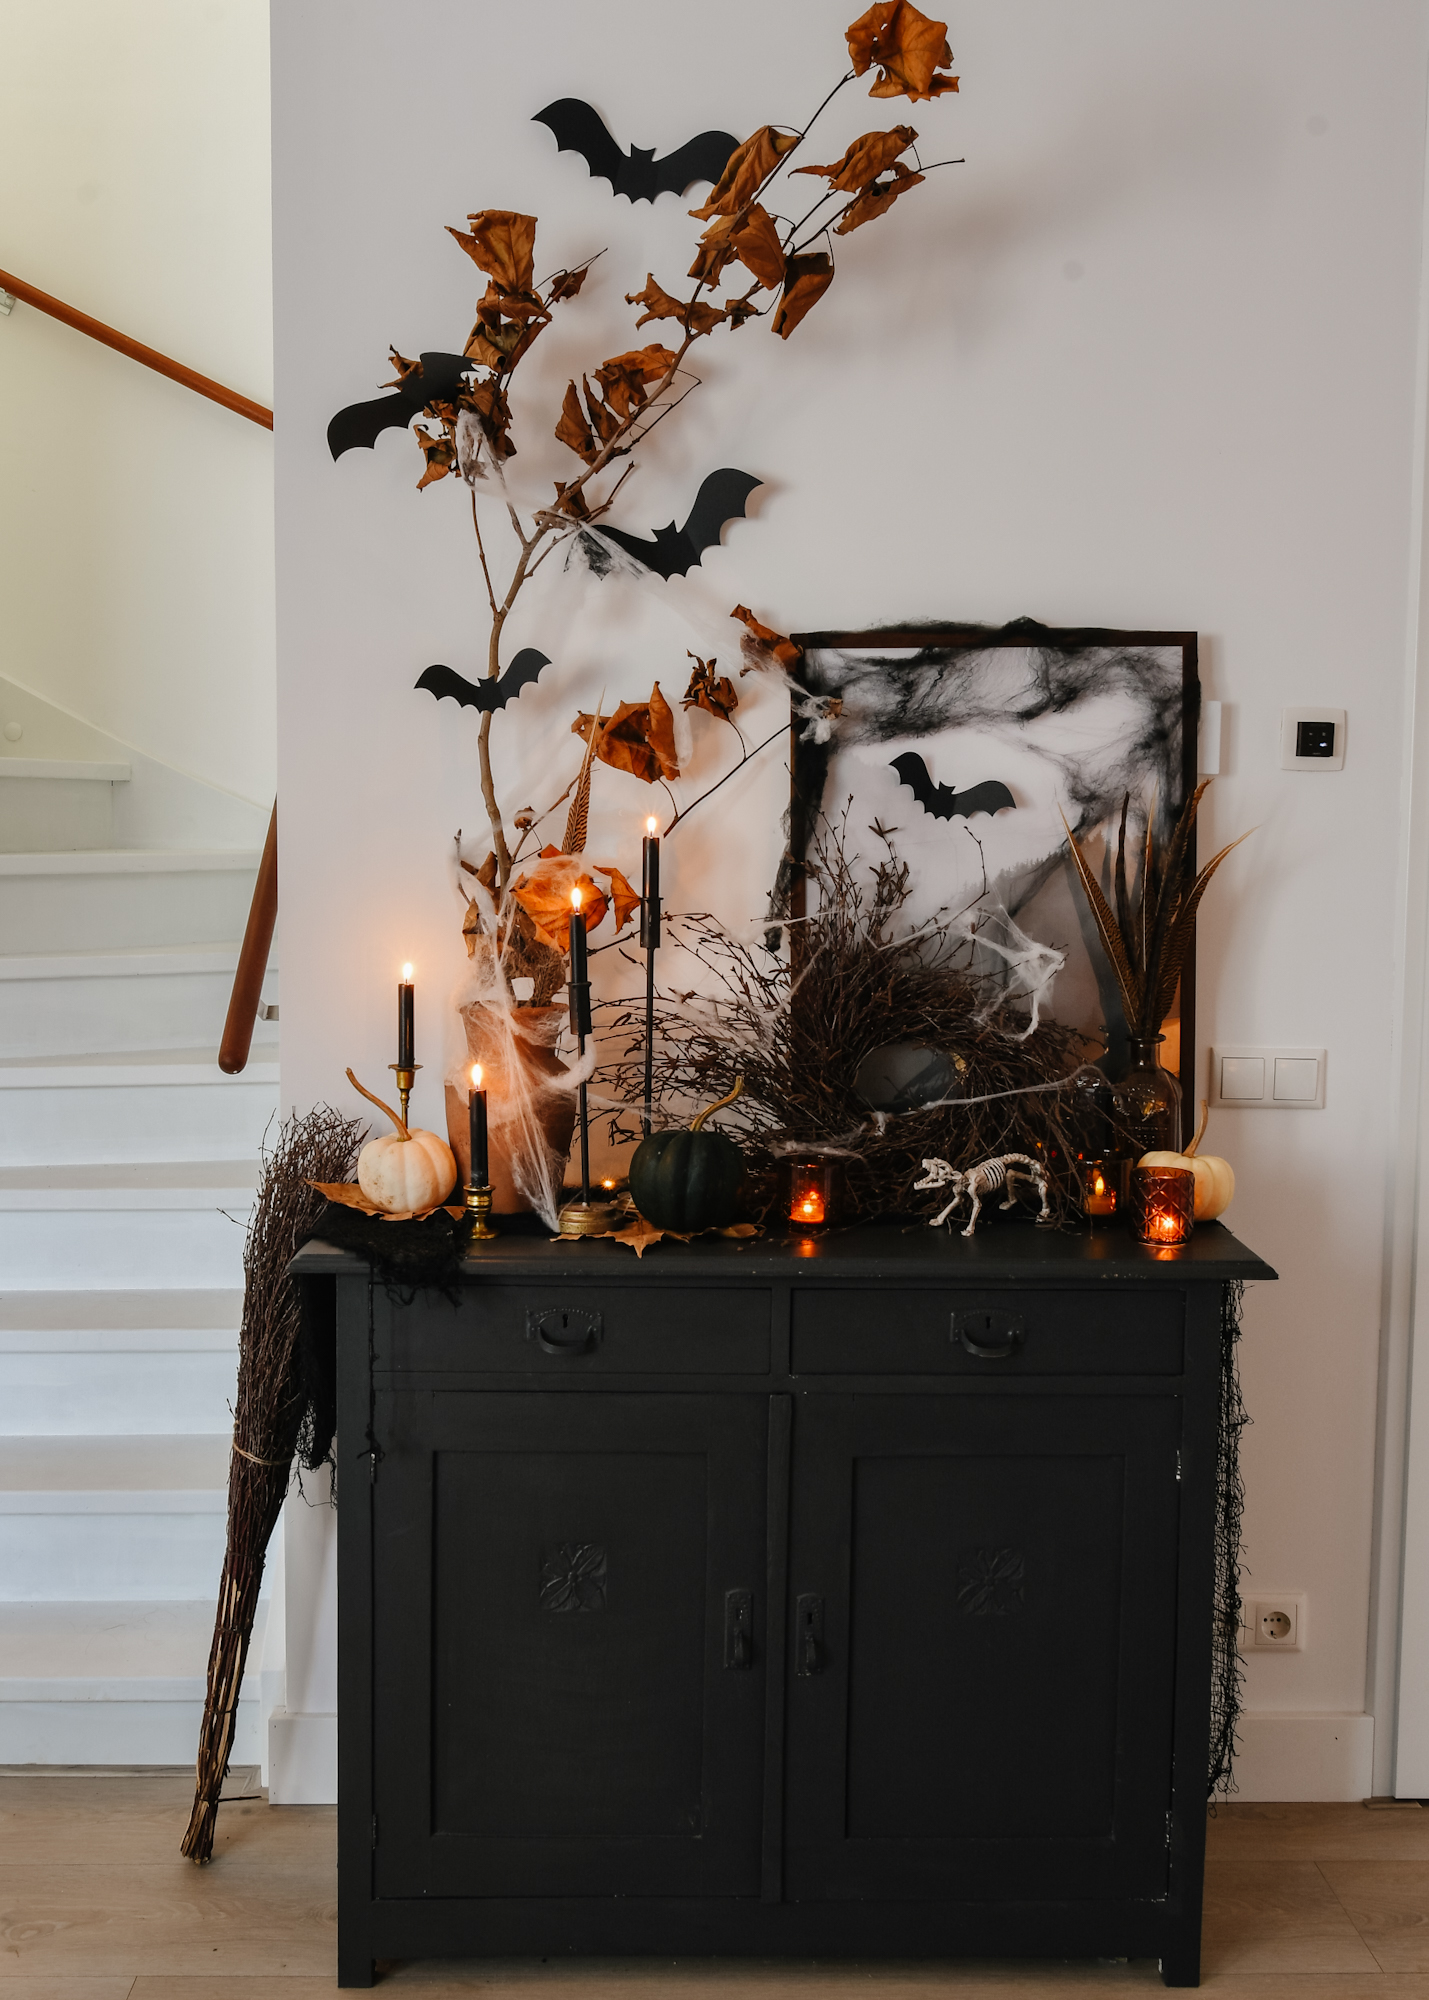 vocaal melk mixer Halloween versiering: spooky decoratie op mijn kastje - So Celebrate! -  vier de seizoenen